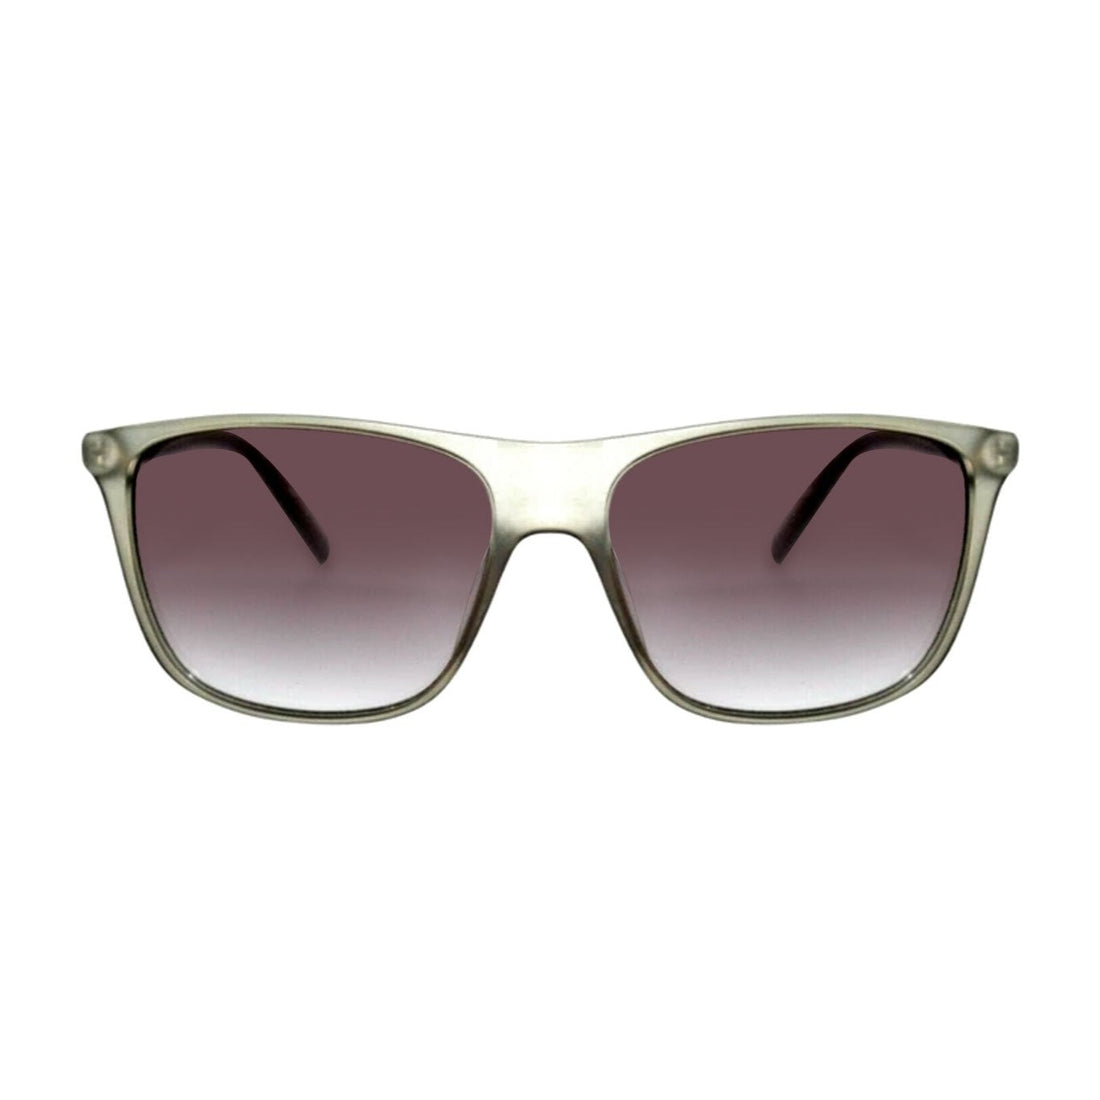 Guess occhiali da sole | Modello GU6957 - Grigio